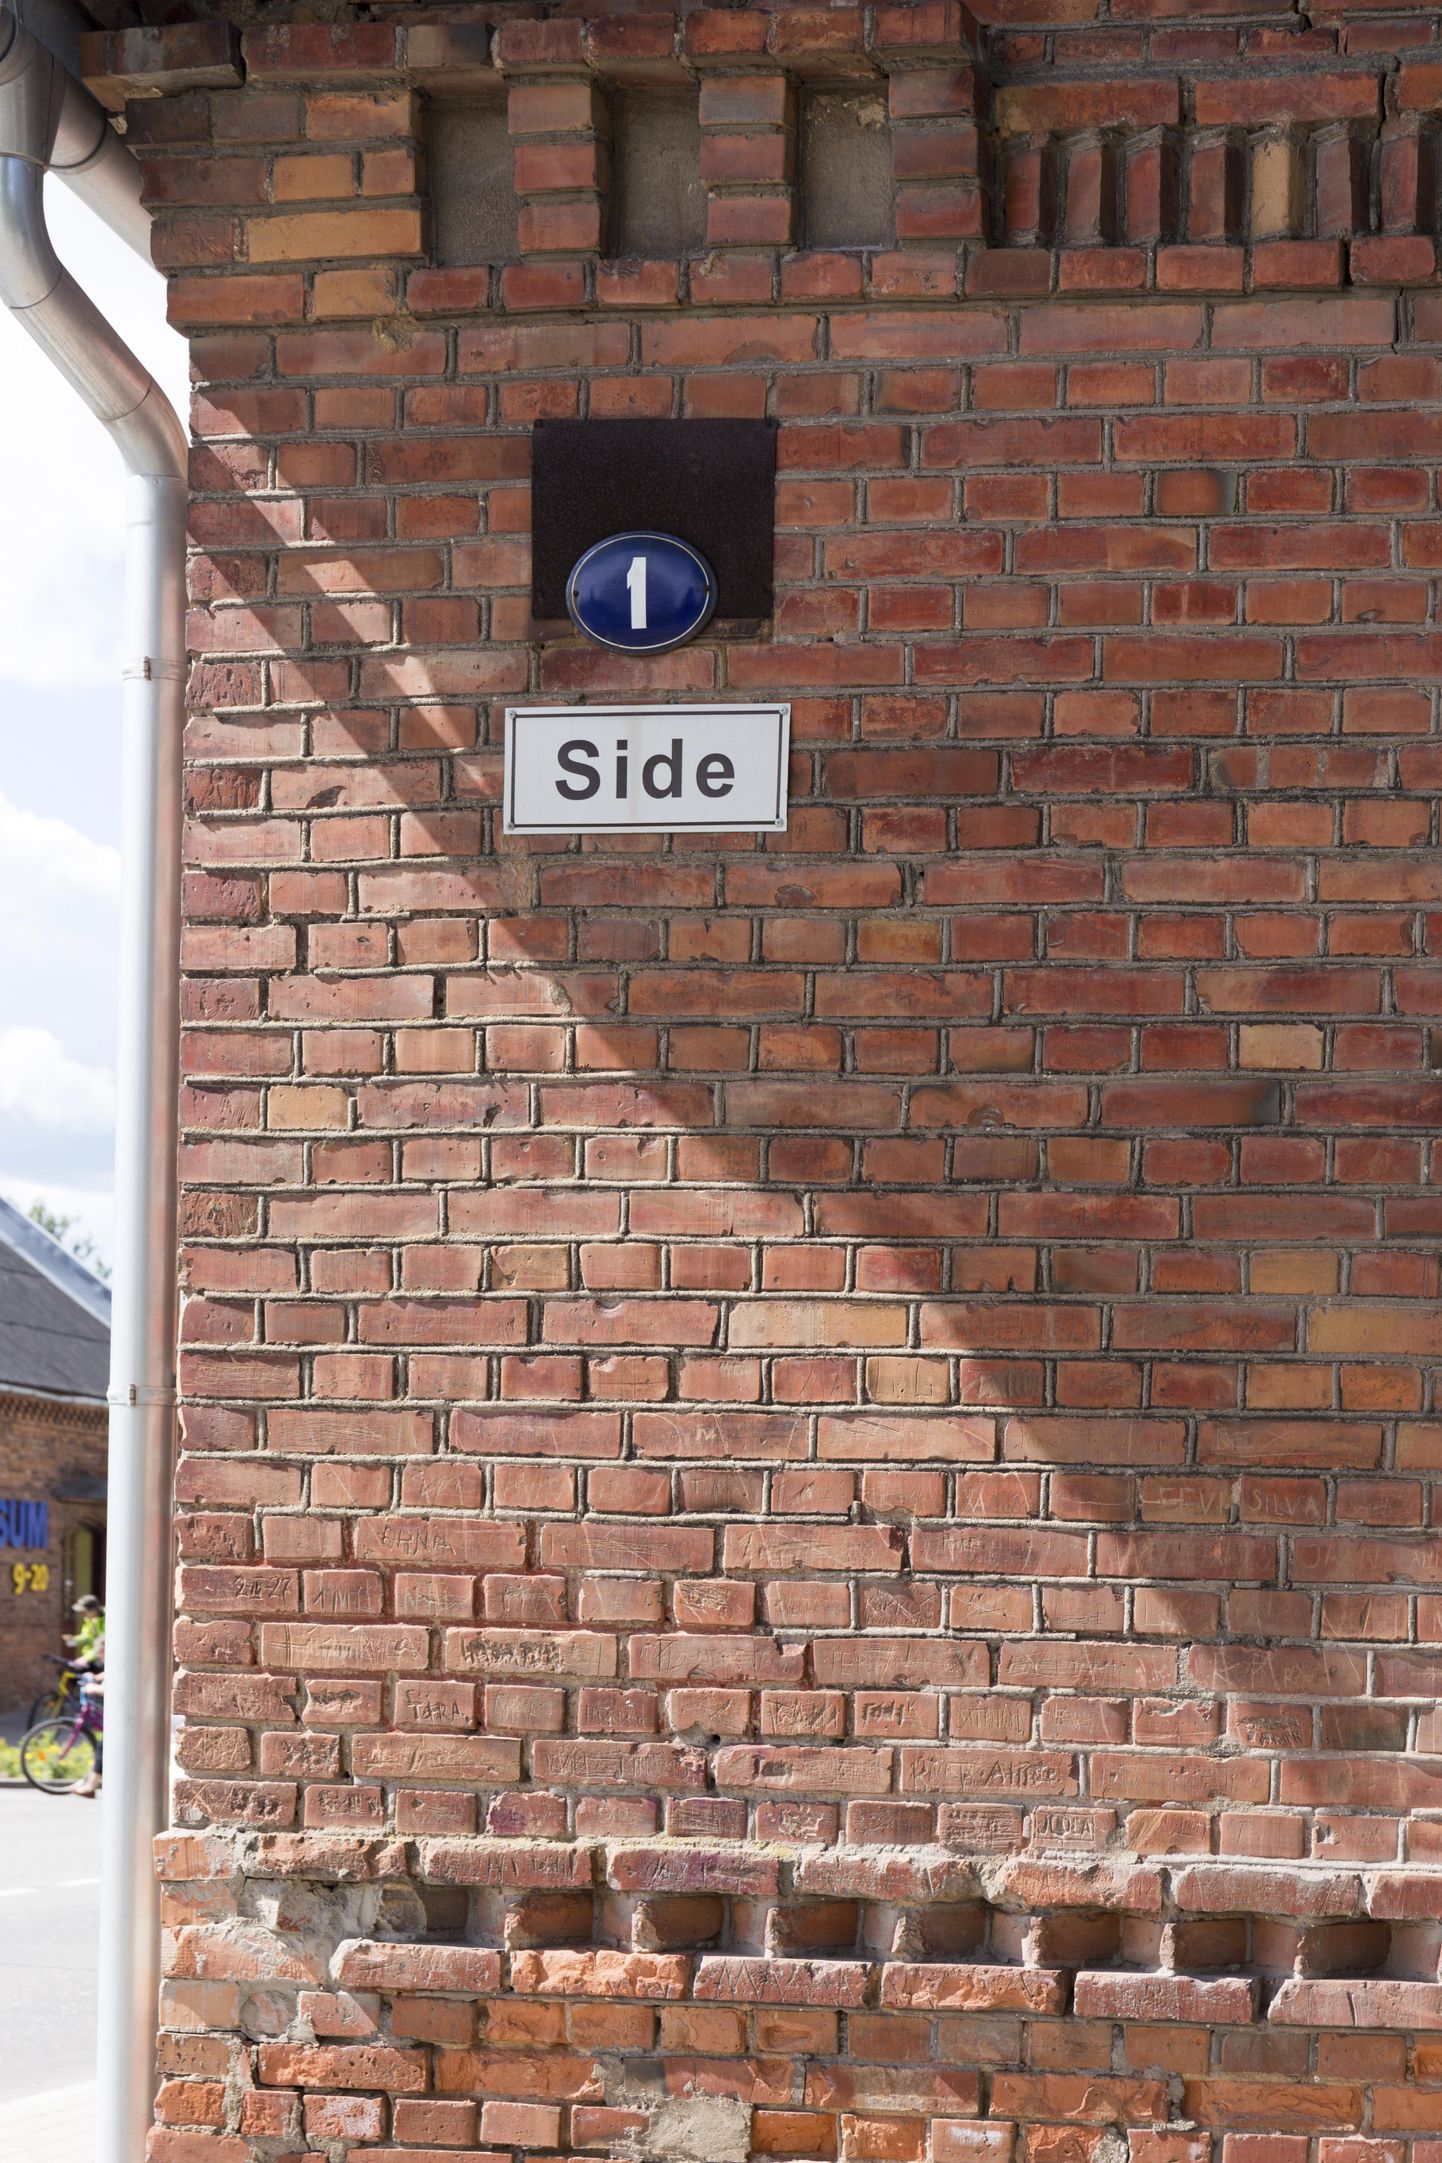 Side tänavat teati Eesti Vabariigi algusaegadel kui Itaalia tänavat. Seda, kas tänava ajalooline nimi taastatakse, otsustab volikogu järgmisel kuul.